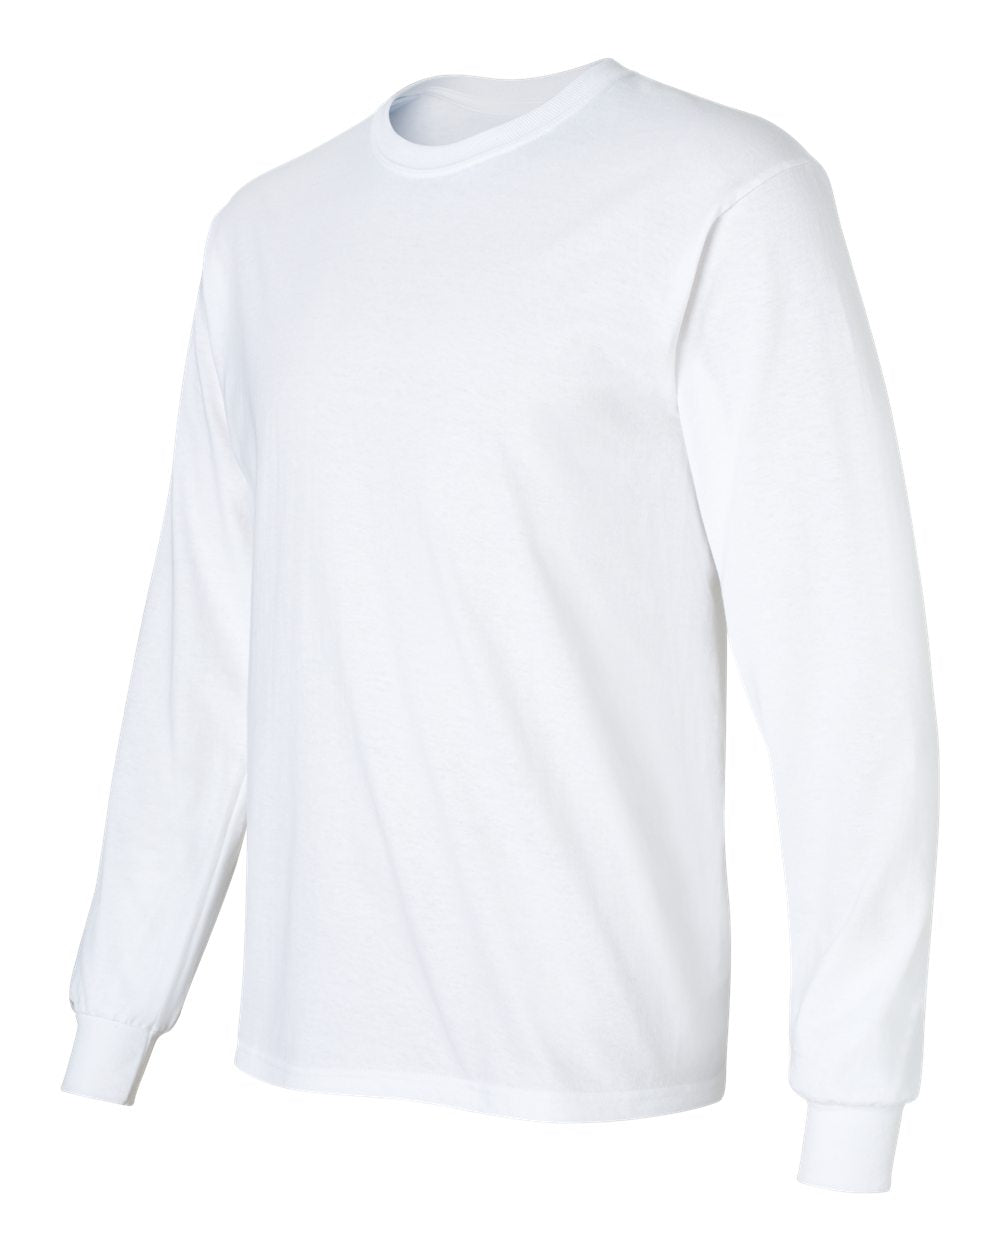 Gildan® - Ultra Cotton® Long Sleeve T-Shirt - 2400